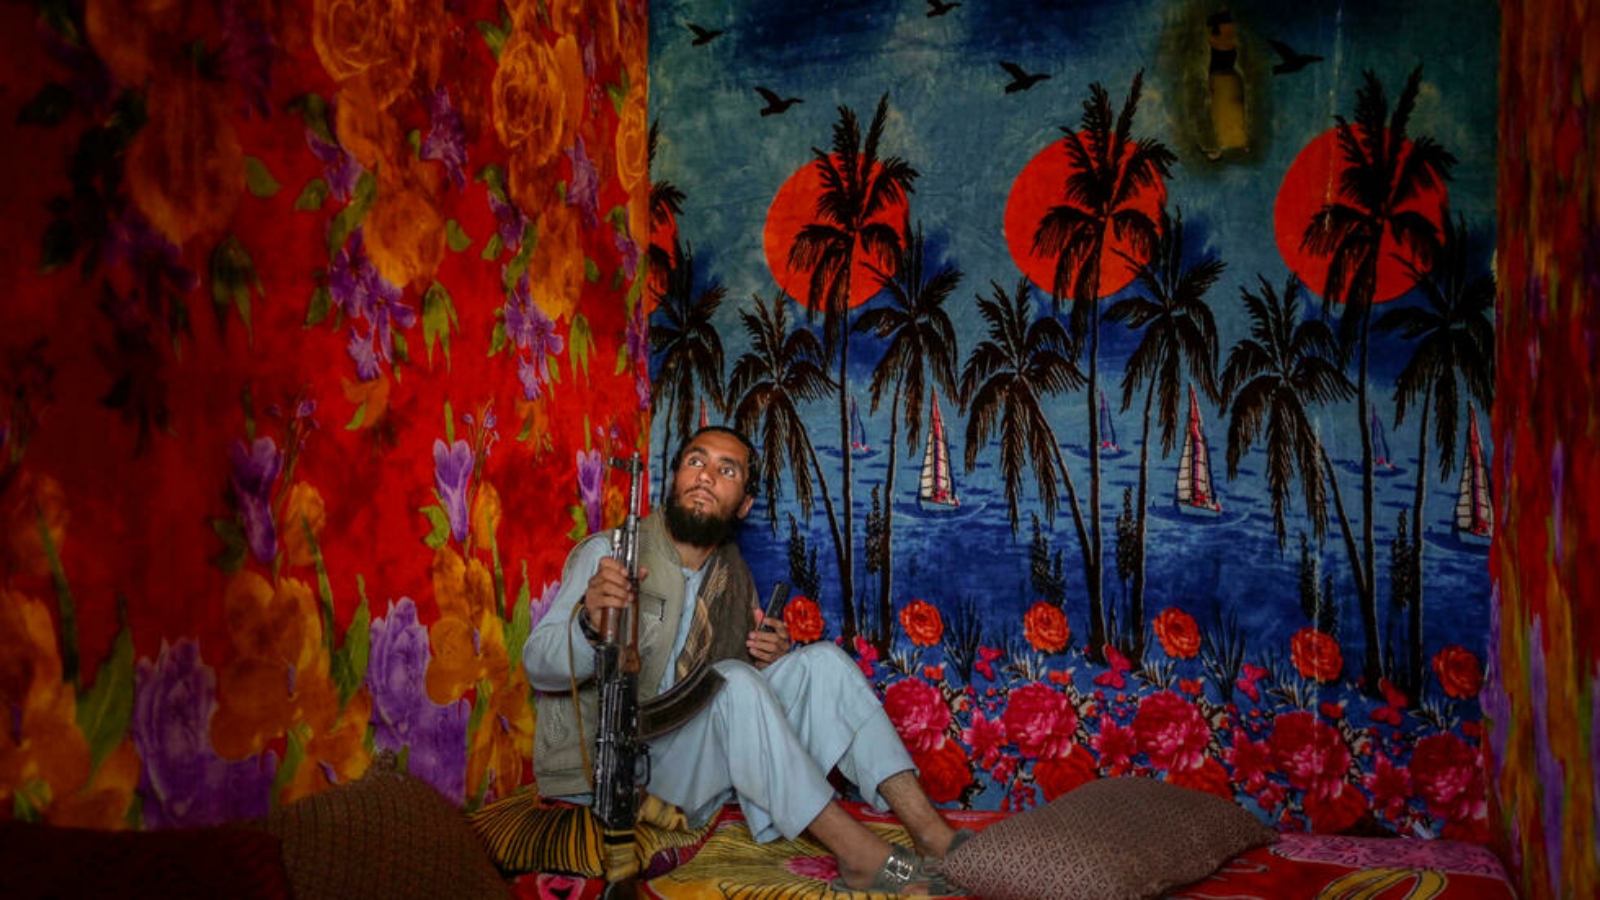 عنصر من طالبان في زنزانة حيث أُلصقت أوراق جدران تعكس غياب الشمس في مناطق استوائية